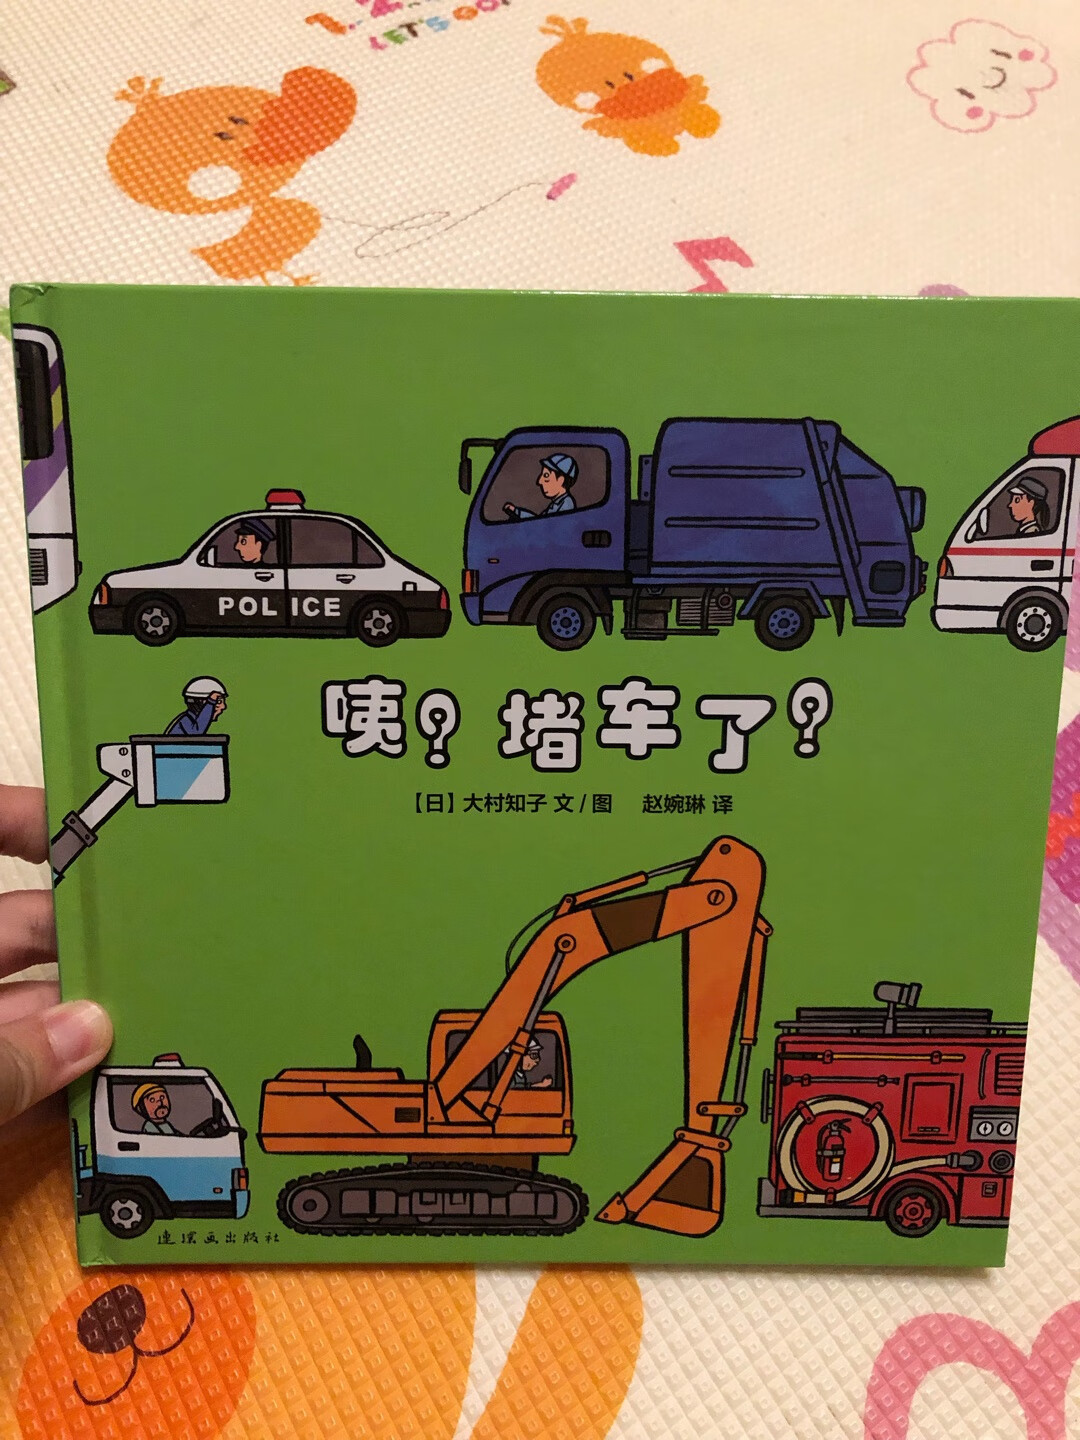 挺有意思的一本交通工具类故事书，绝对能吸引低幼车迷